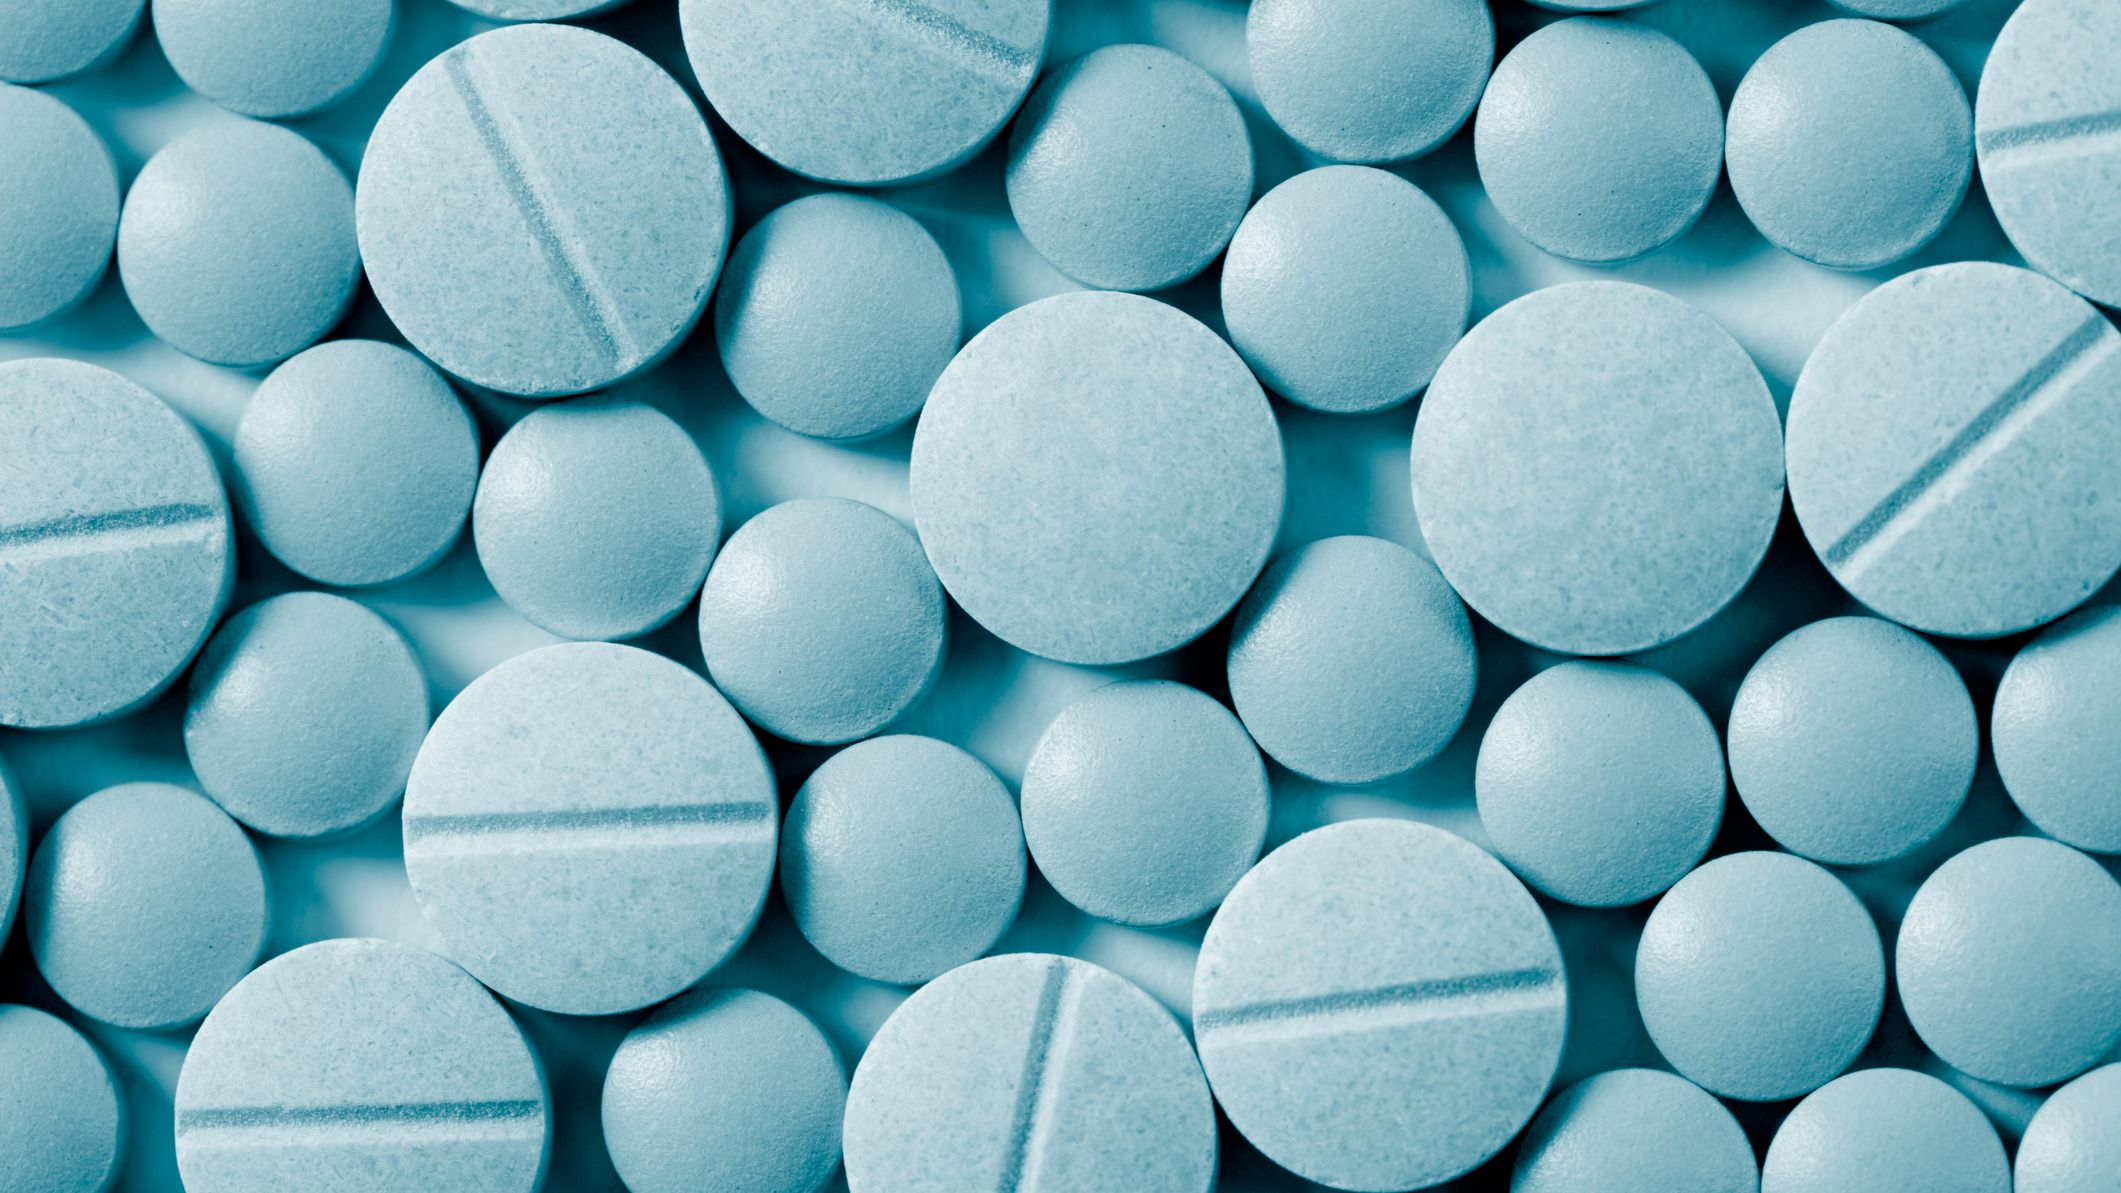 در این قسمت چند مورد از داروهای آنتی اسپاسمودیک را نام می بریم: